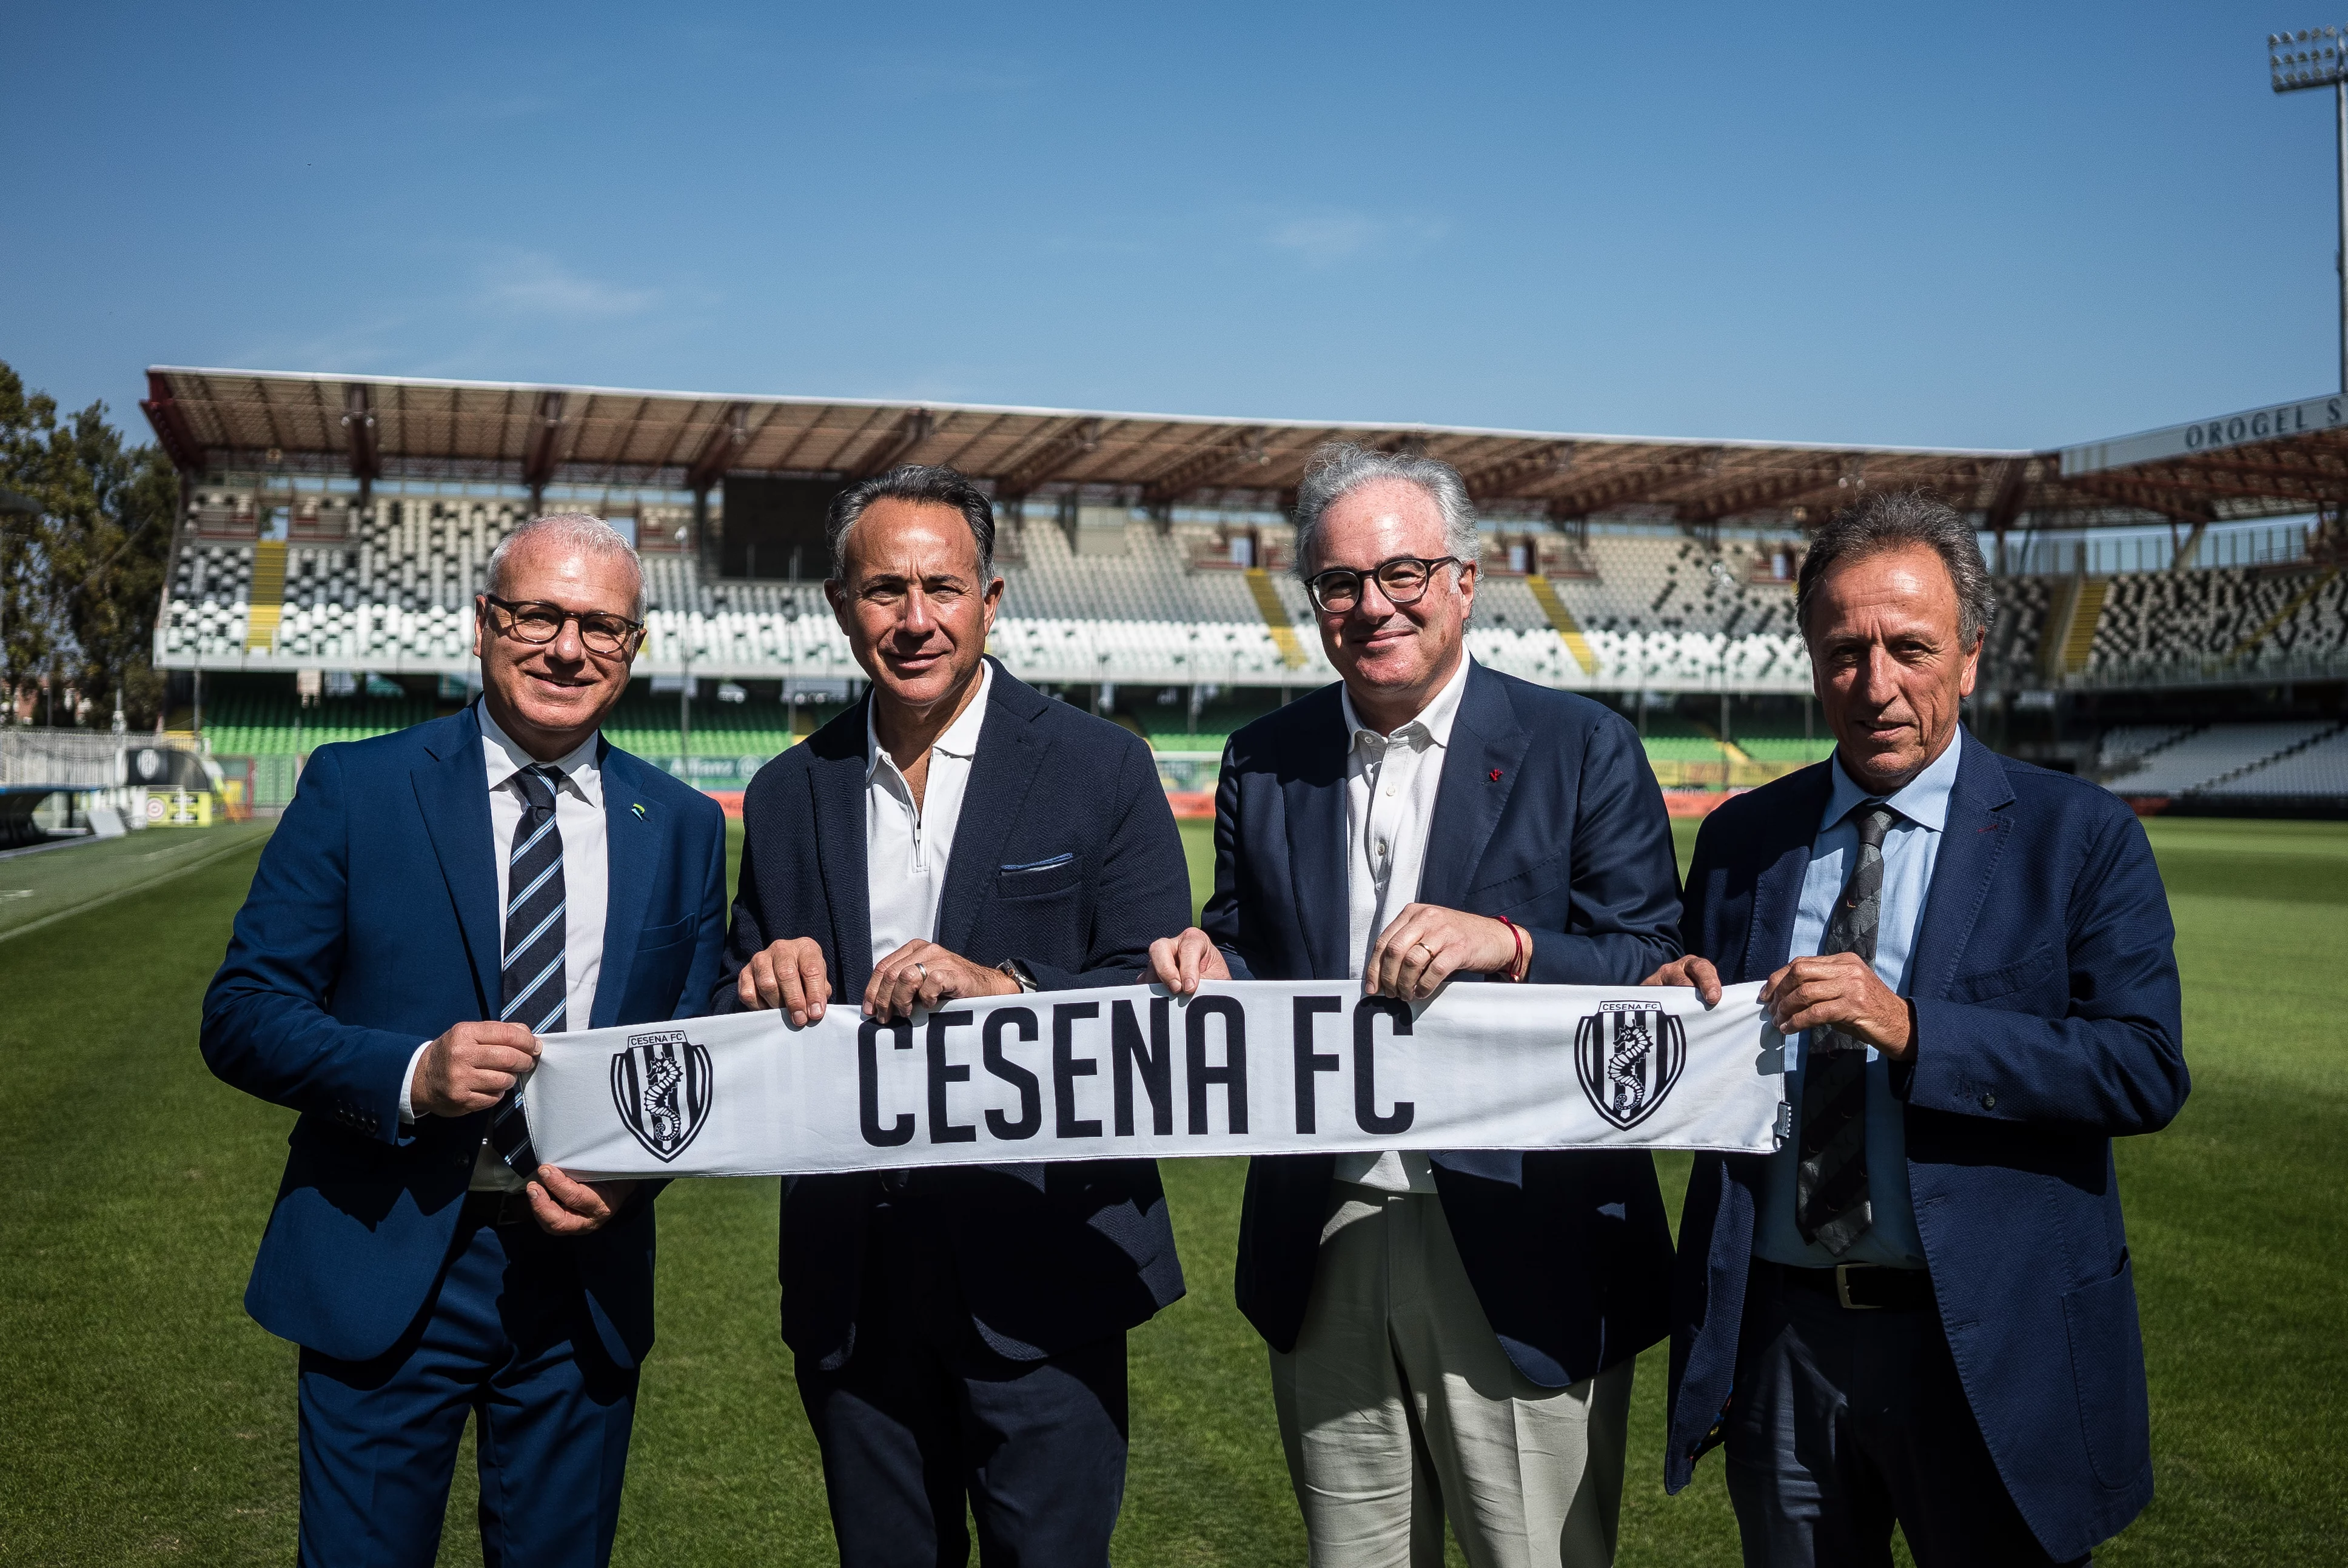 Da destra: Roberto Romagnoli, Michael Aiello e Anthony Scotto (soci del Cesena FC), Roberto Cuppone